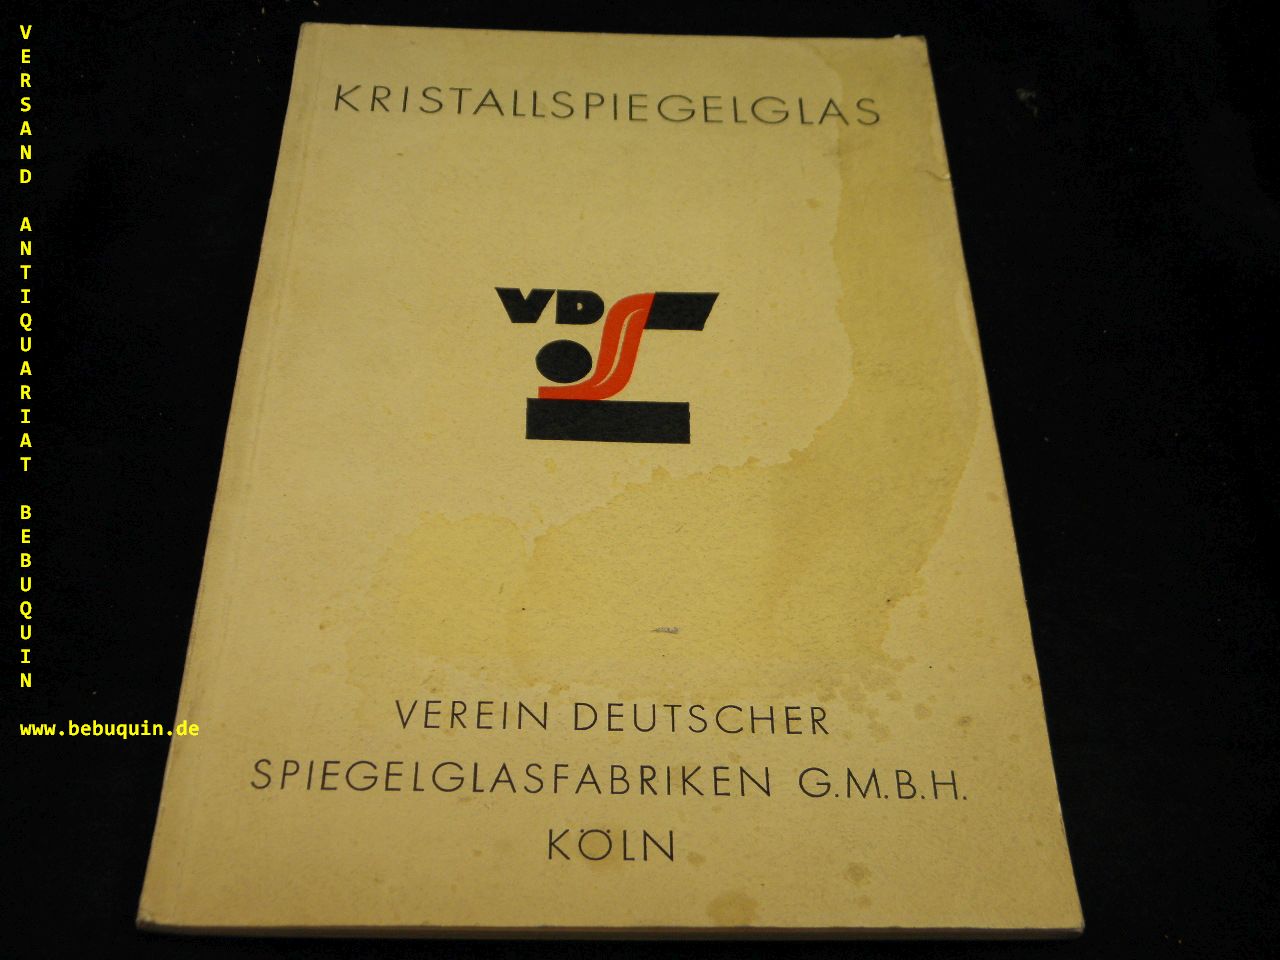 ARCHITEKTUR.- - VERWENDUNG VON KRISTALLSPIEGELGLAS.-  Hrsg. vom Verein deutscher Spiegelglasfabriken G.m.b.H. Kln